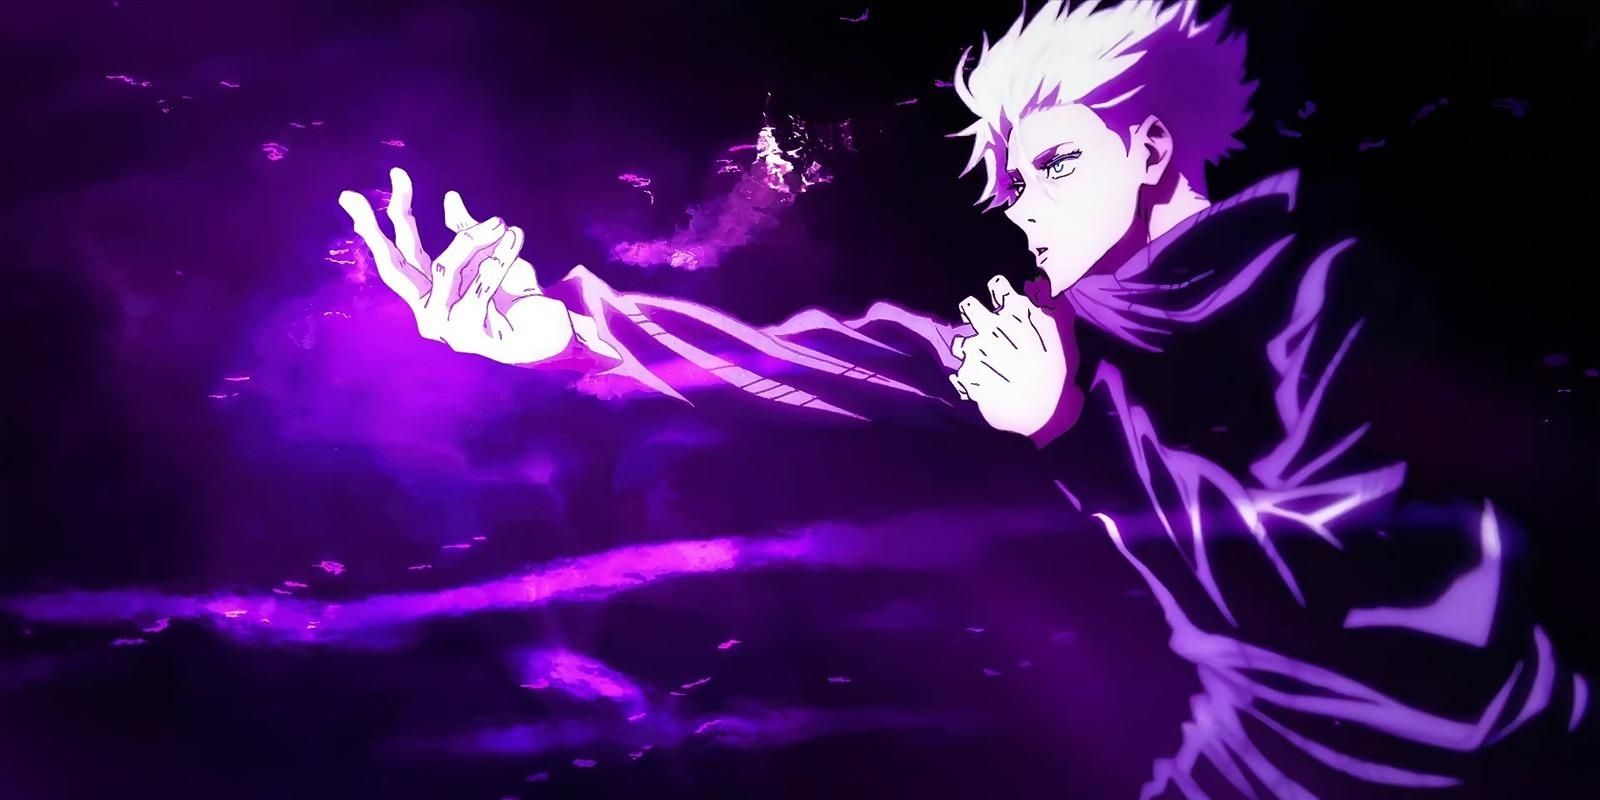 gojo satoru uses purple best anime moments